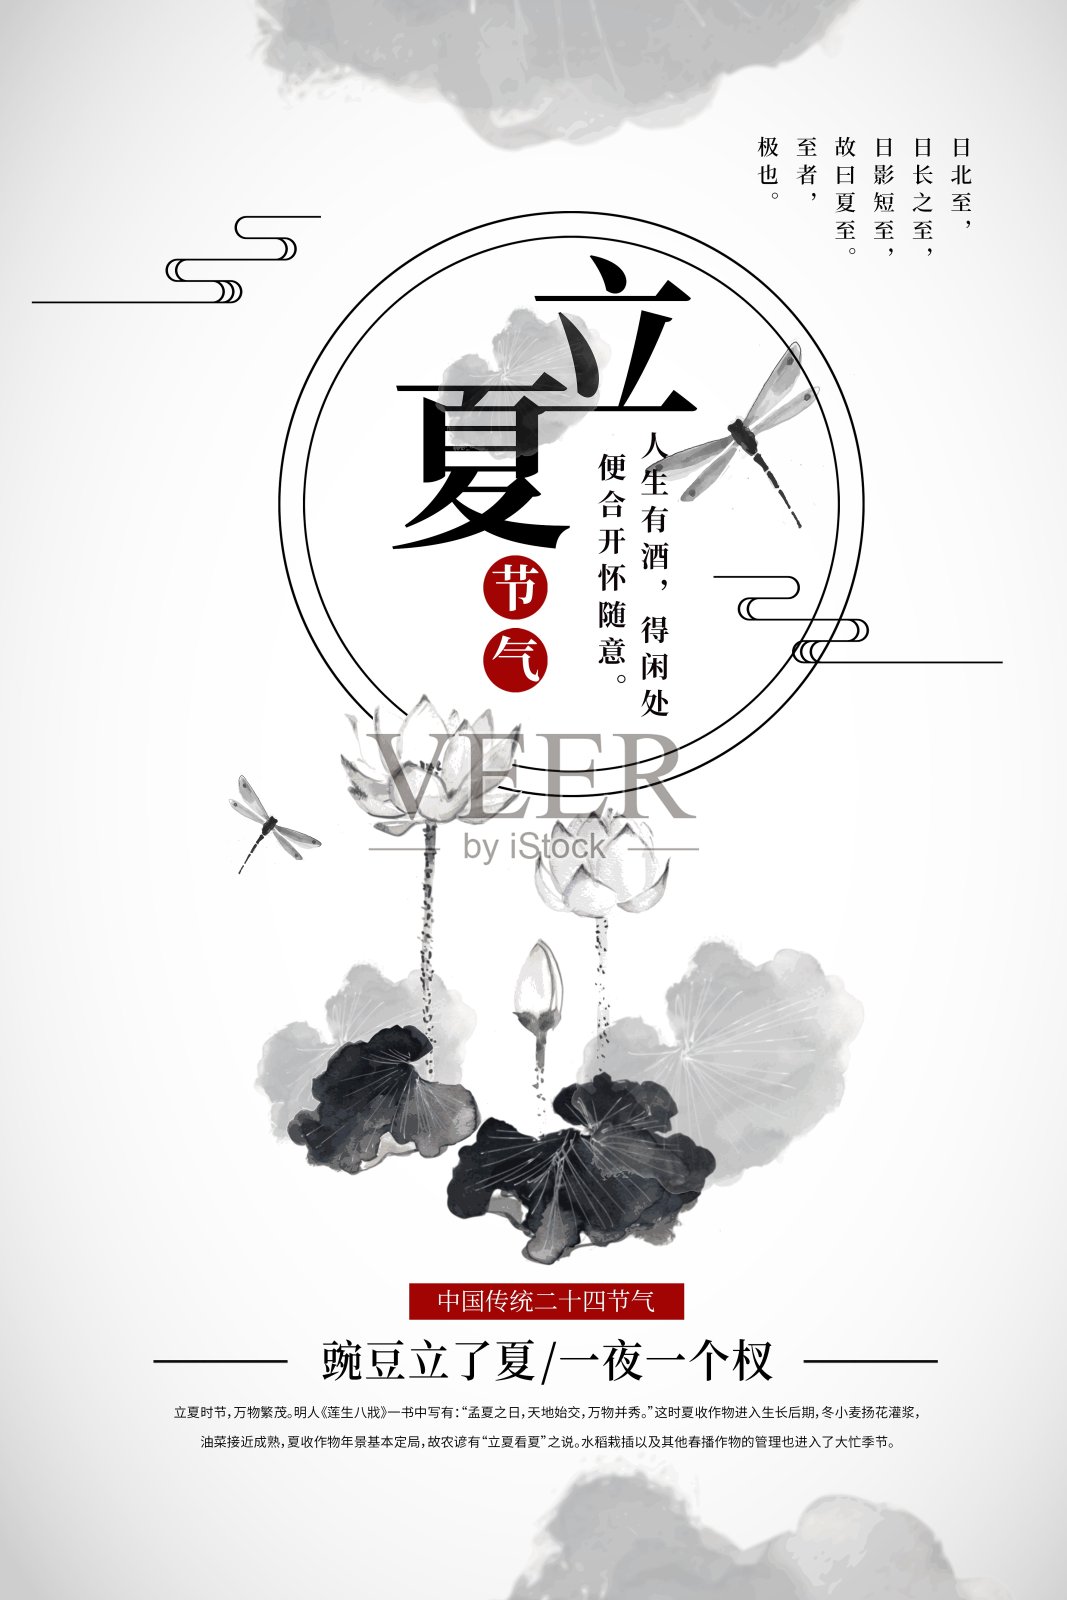 水墨中国风立夏24节气节日海报设计模板素材